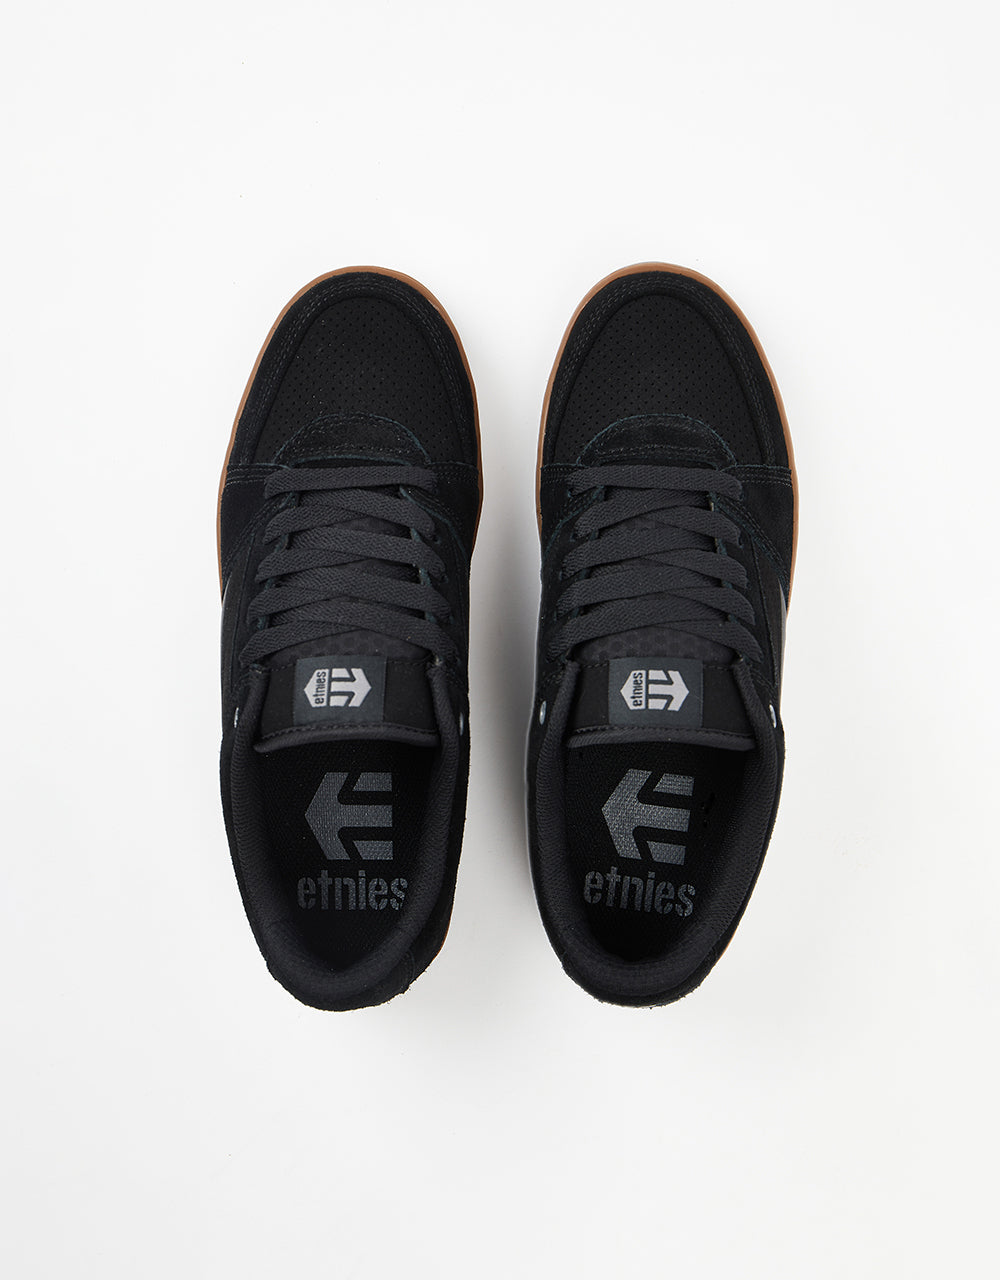 Etnies MC Rap Lo Skate Shoes - Black/Gum